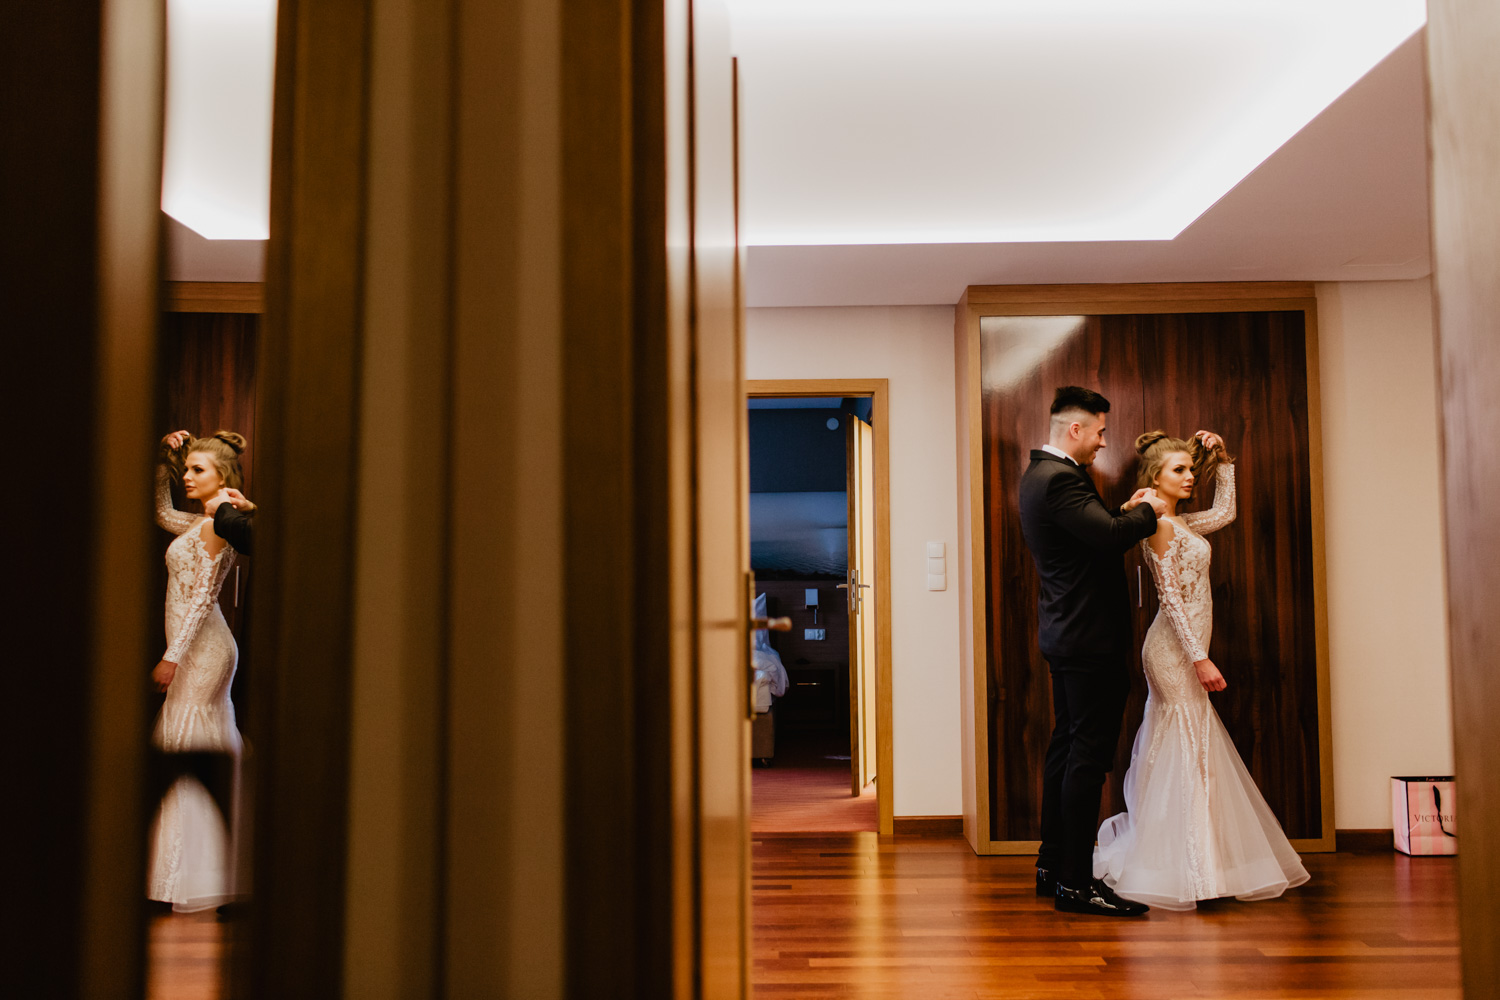 Ślub i wesele Hotel Amazonka | Olga i Szymon | fotografia ślubna